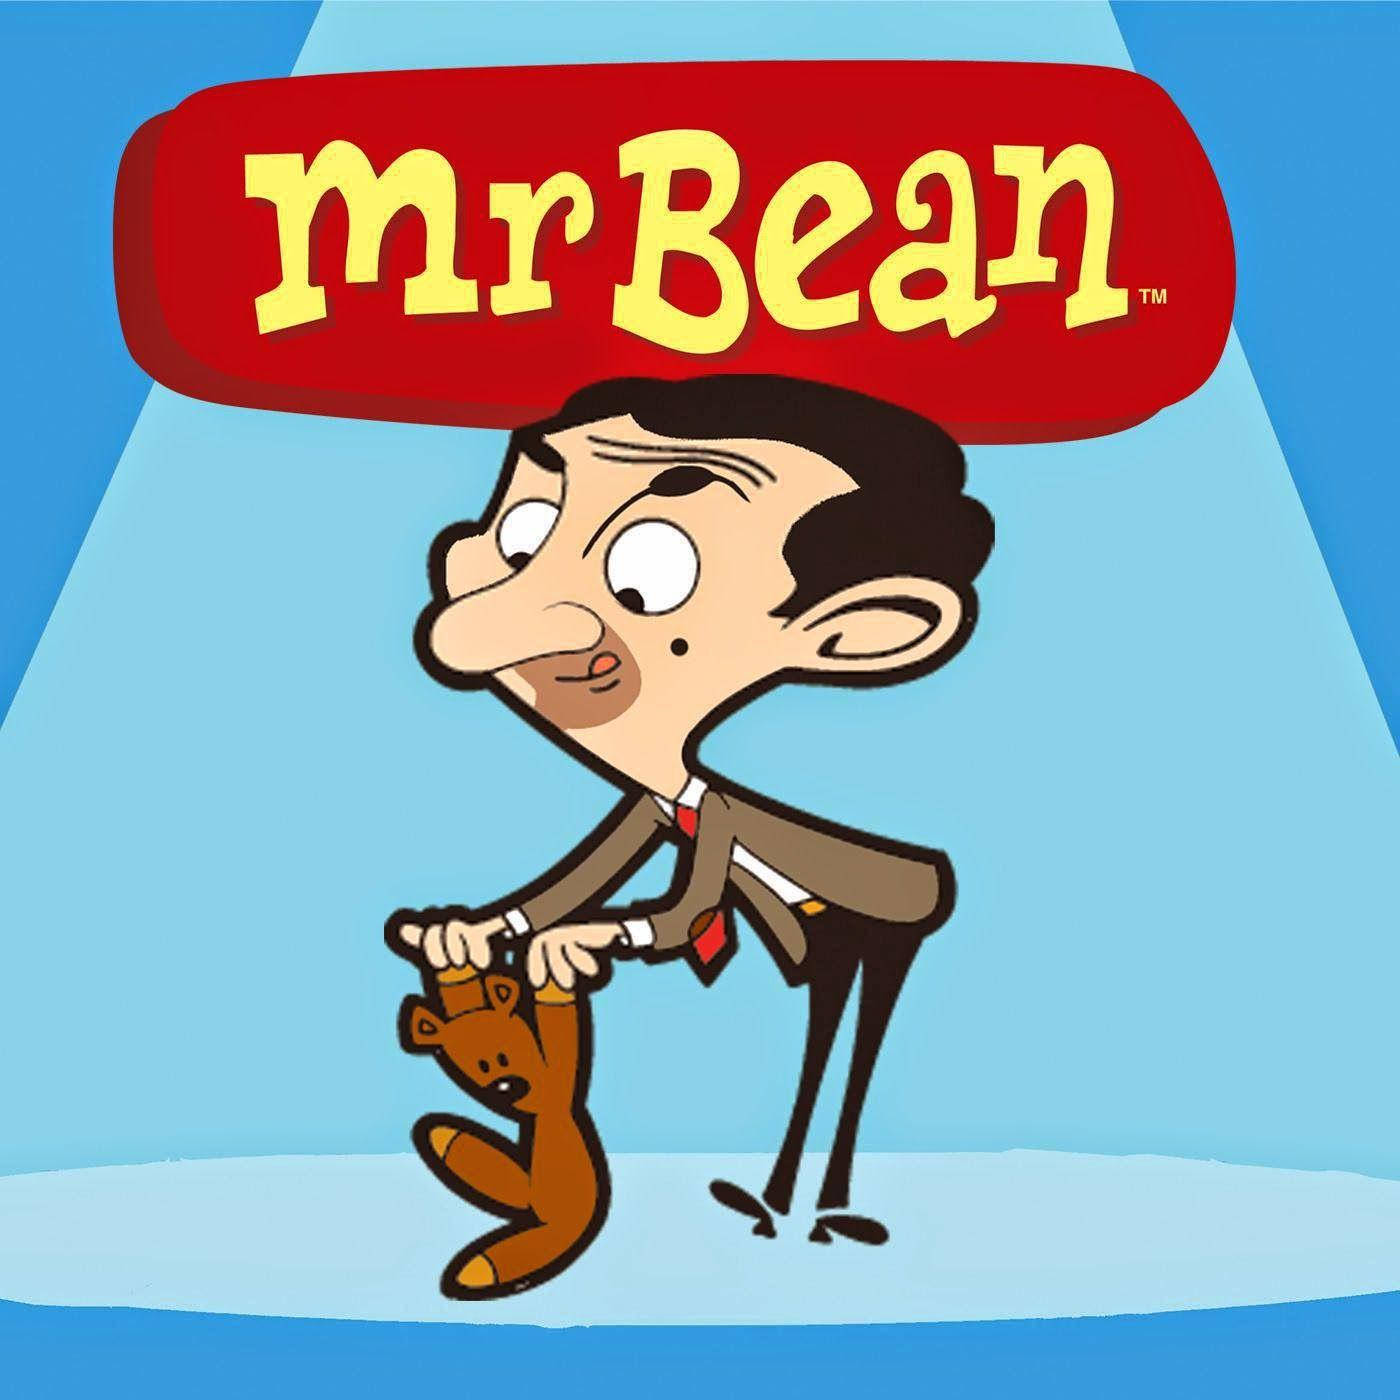 Mr. Bean Cartoon Teddy Bear Background